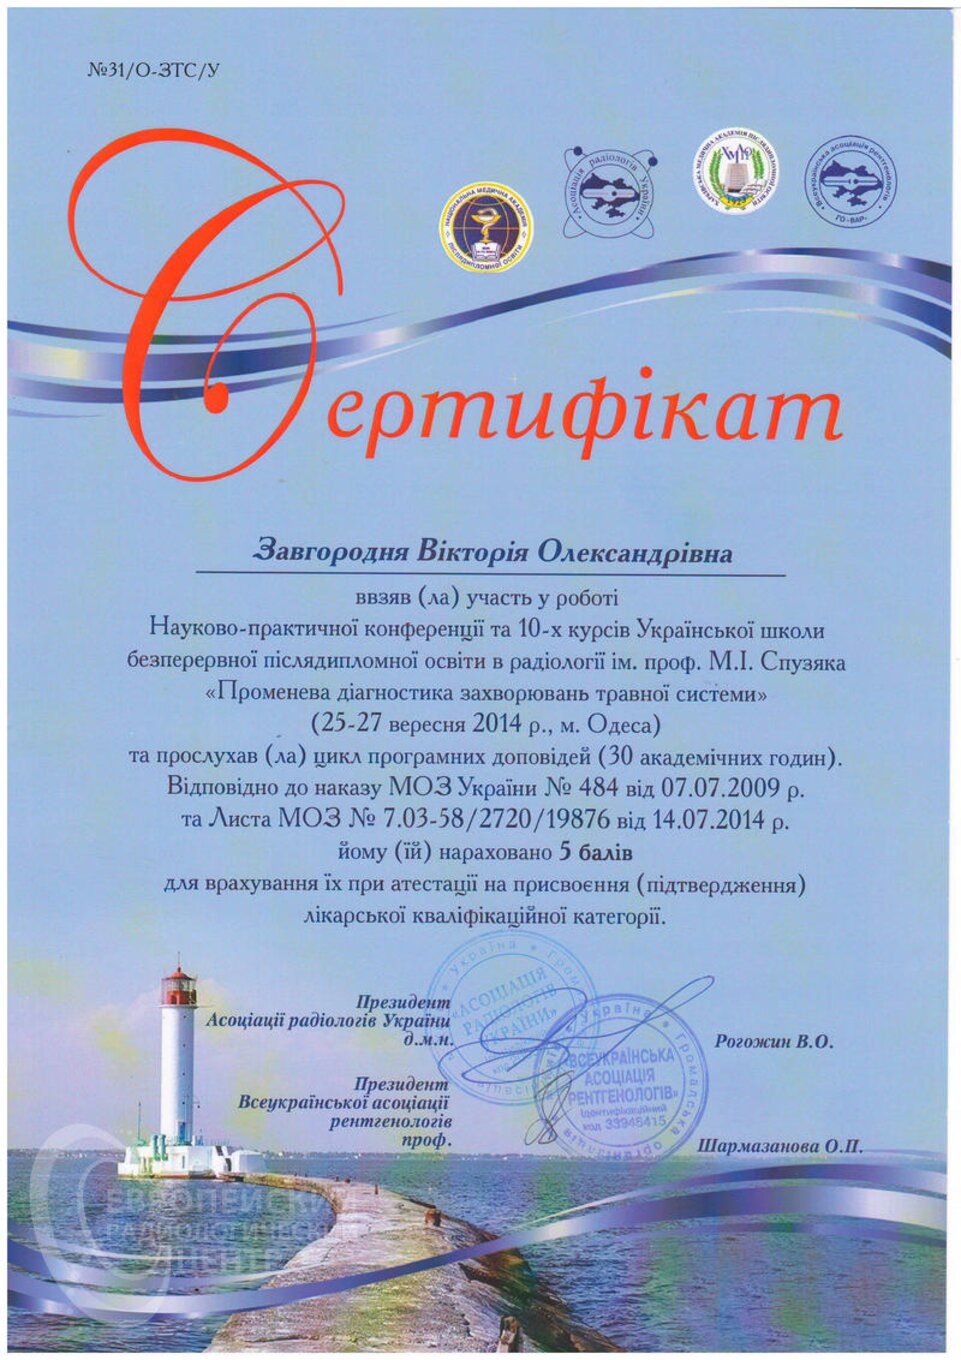 certificates/zavgorodnya-viktoriya-oleksandrivna/erc-zavgorodnyaja-certificates-01.jpg